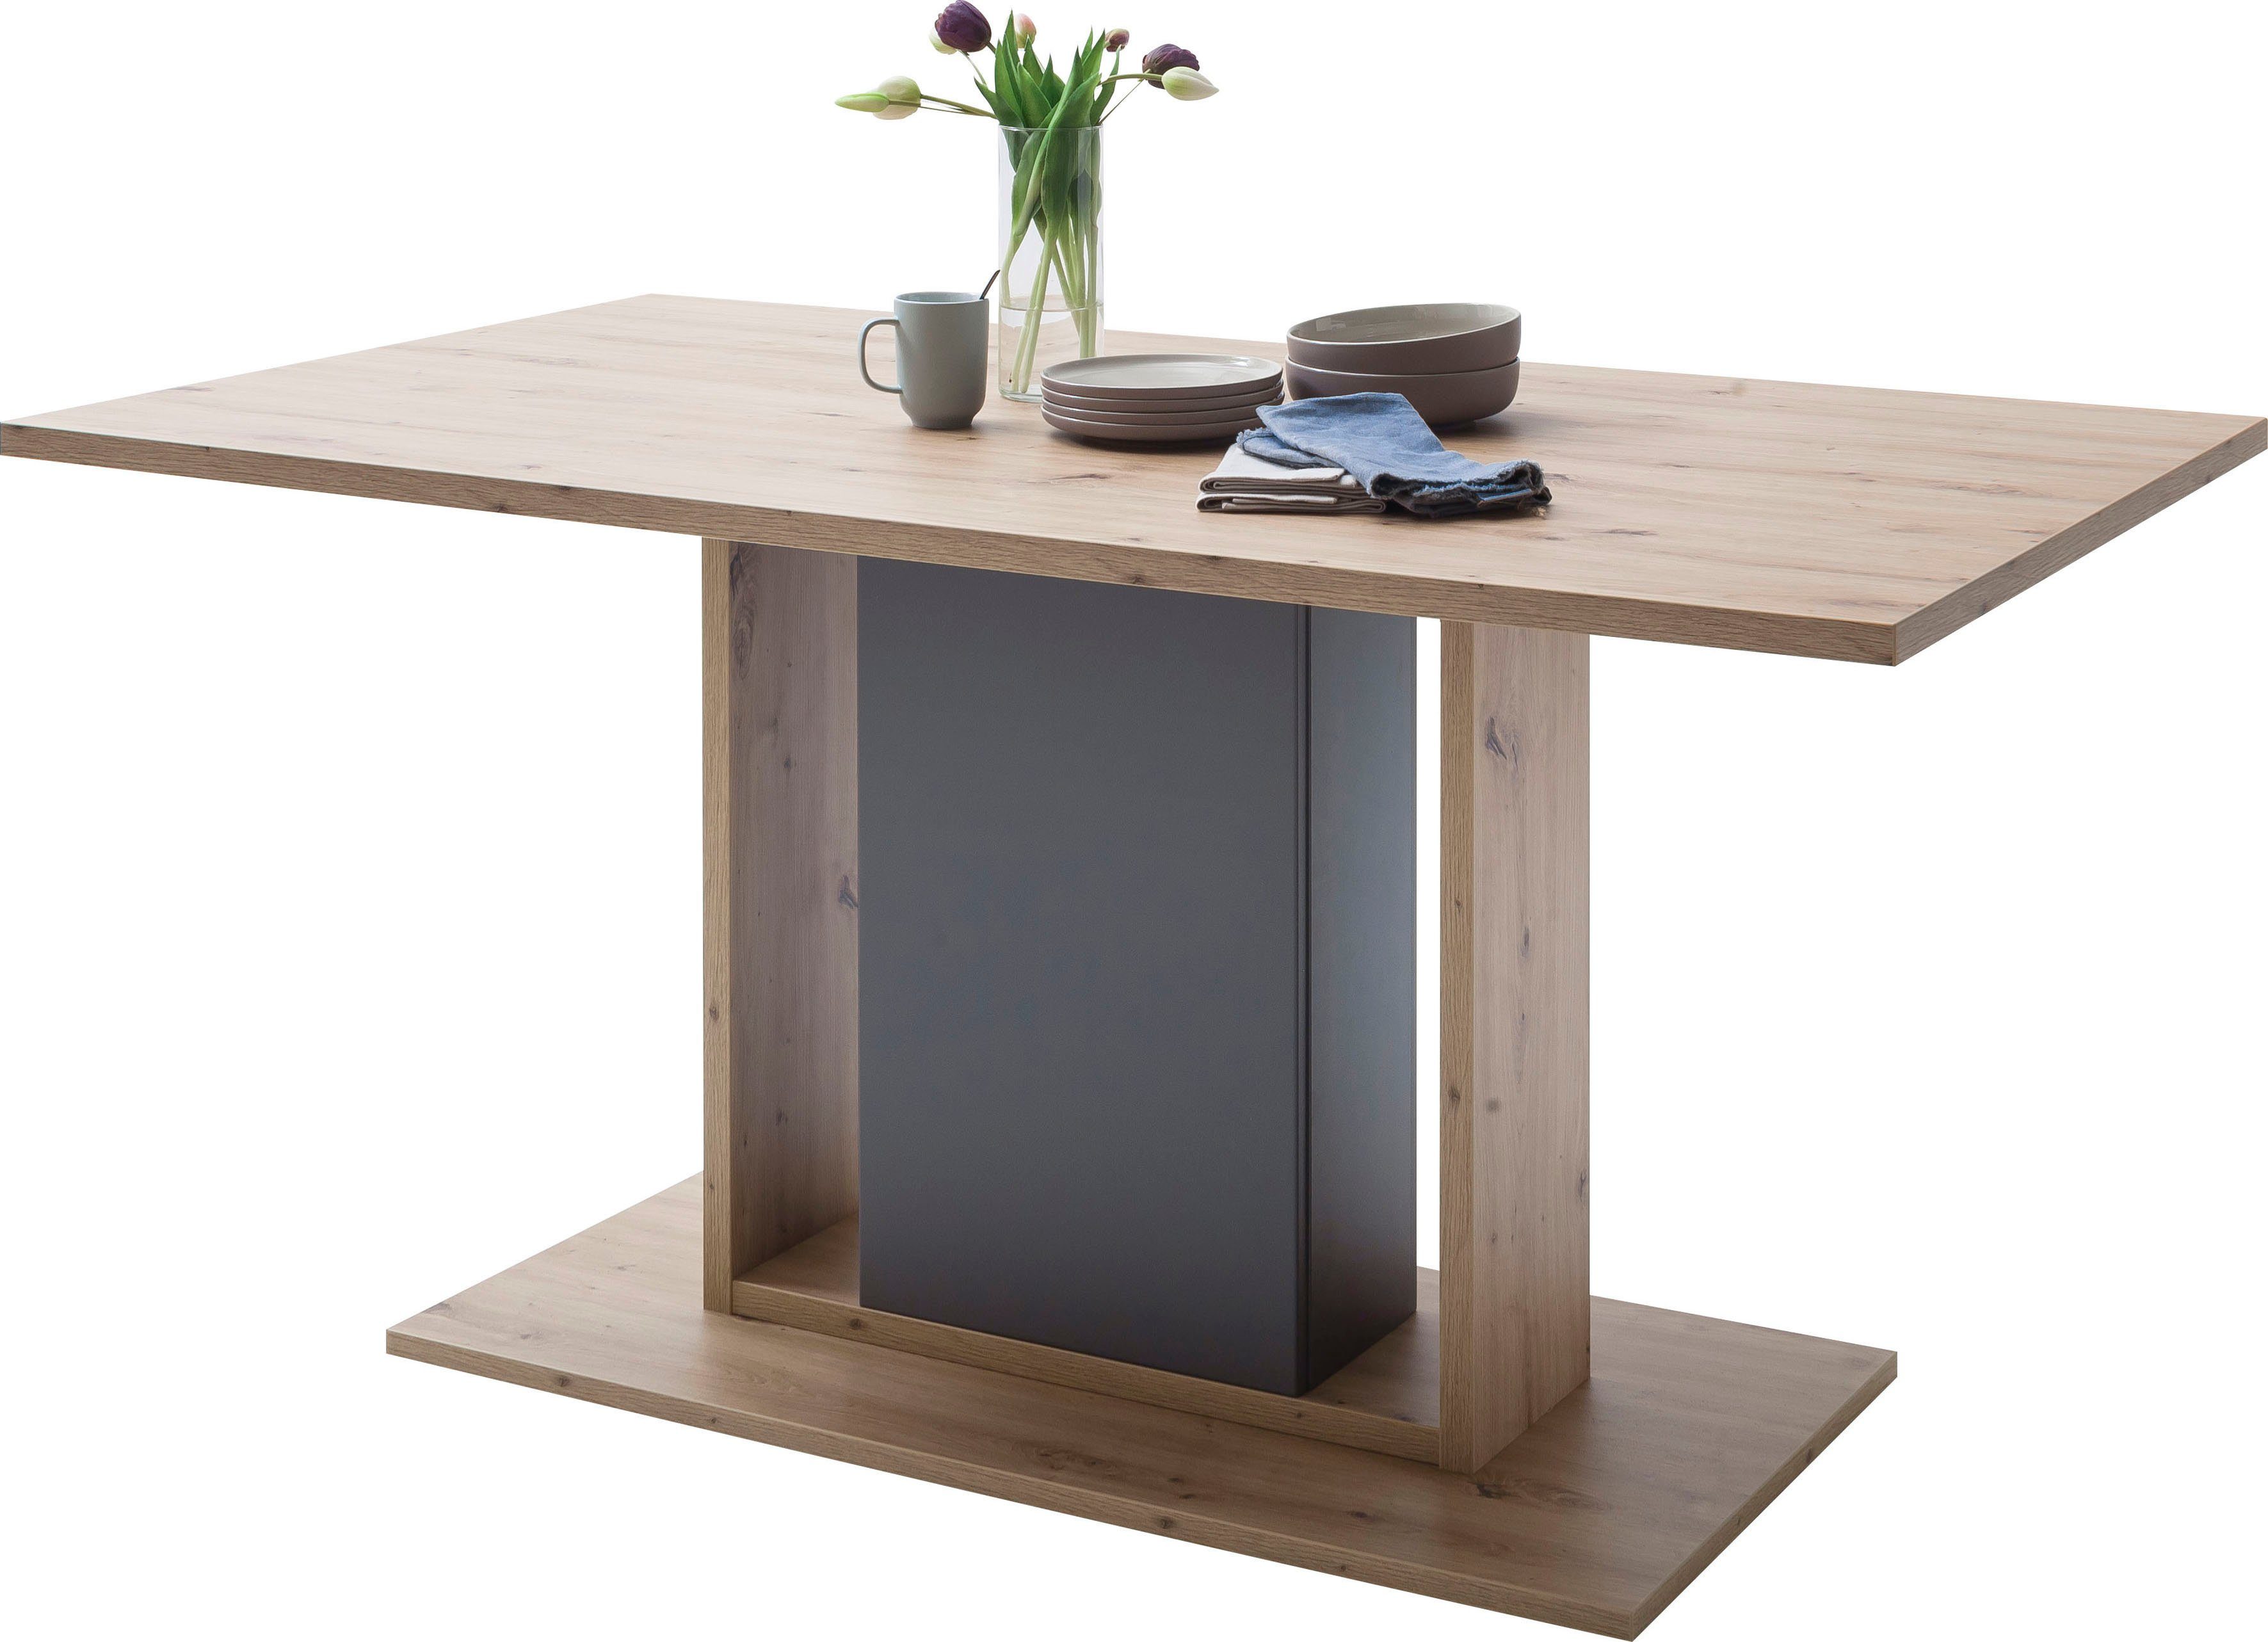 MCA furniture Lizzano stijl tot 80 kg belastbaar, tafel 160 cm breed makkelijk besteld OTTO